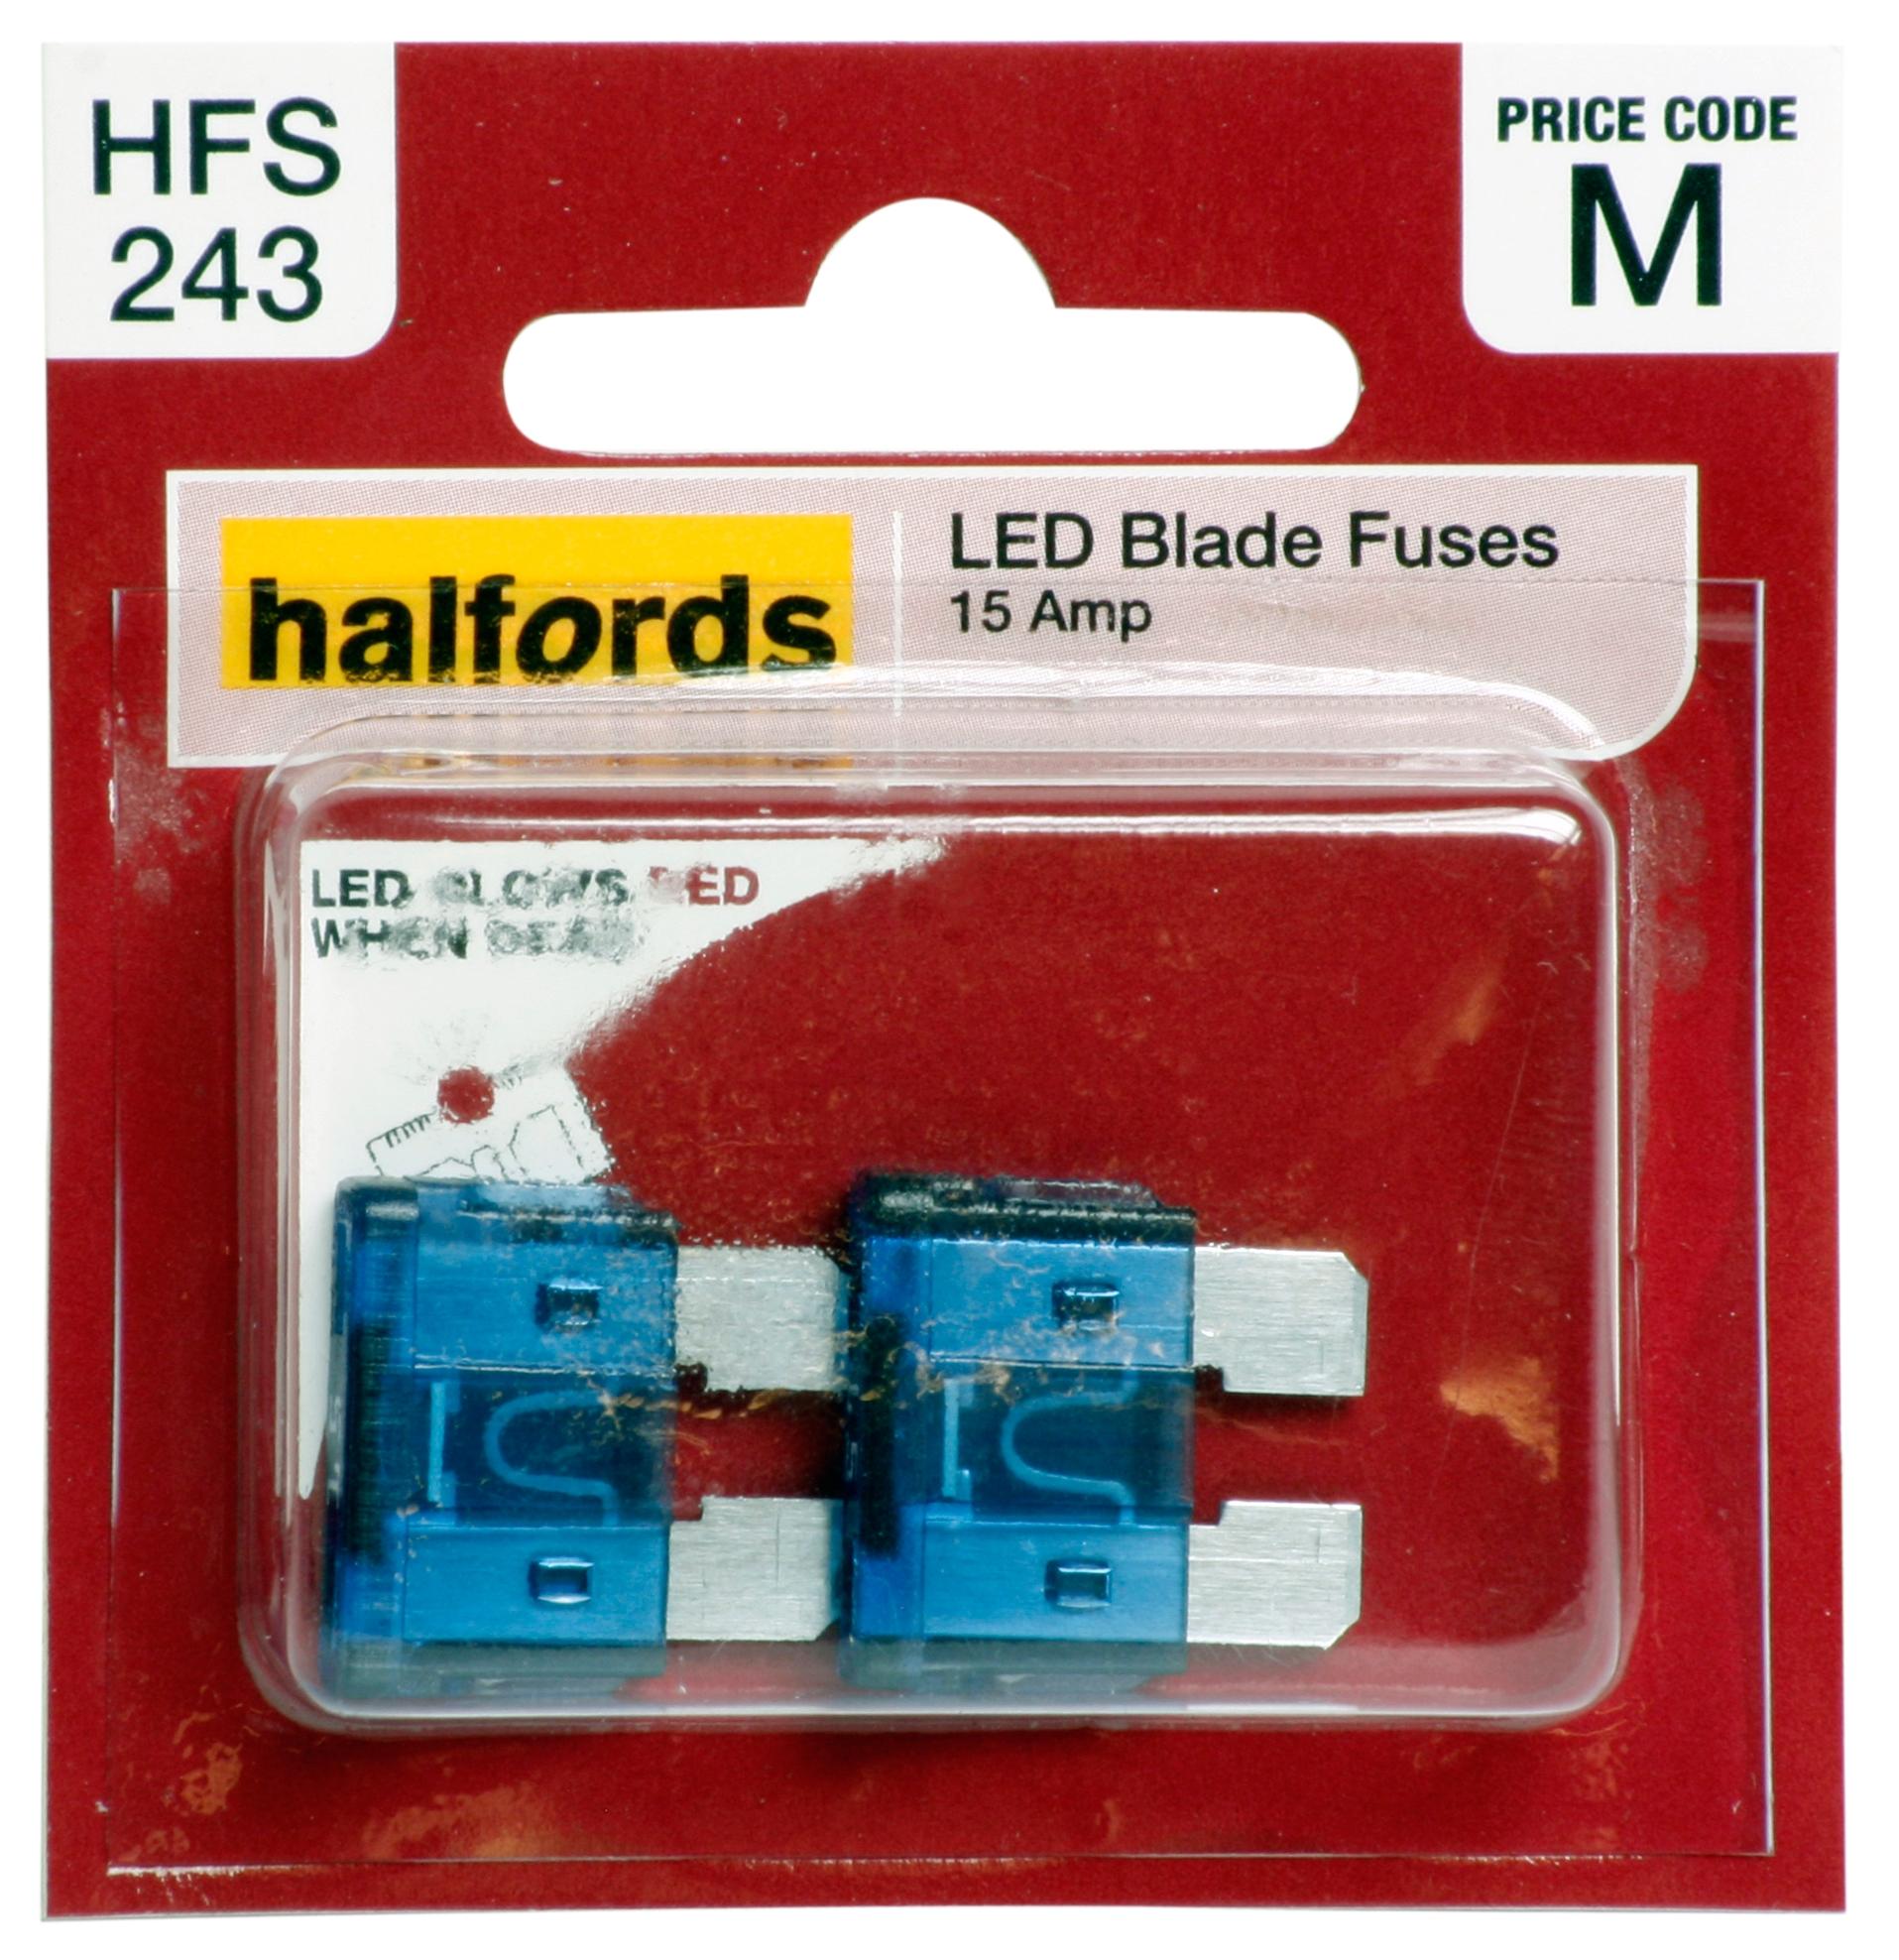 Halfords Led Blade Fuses 15 Amp (Hfs243)